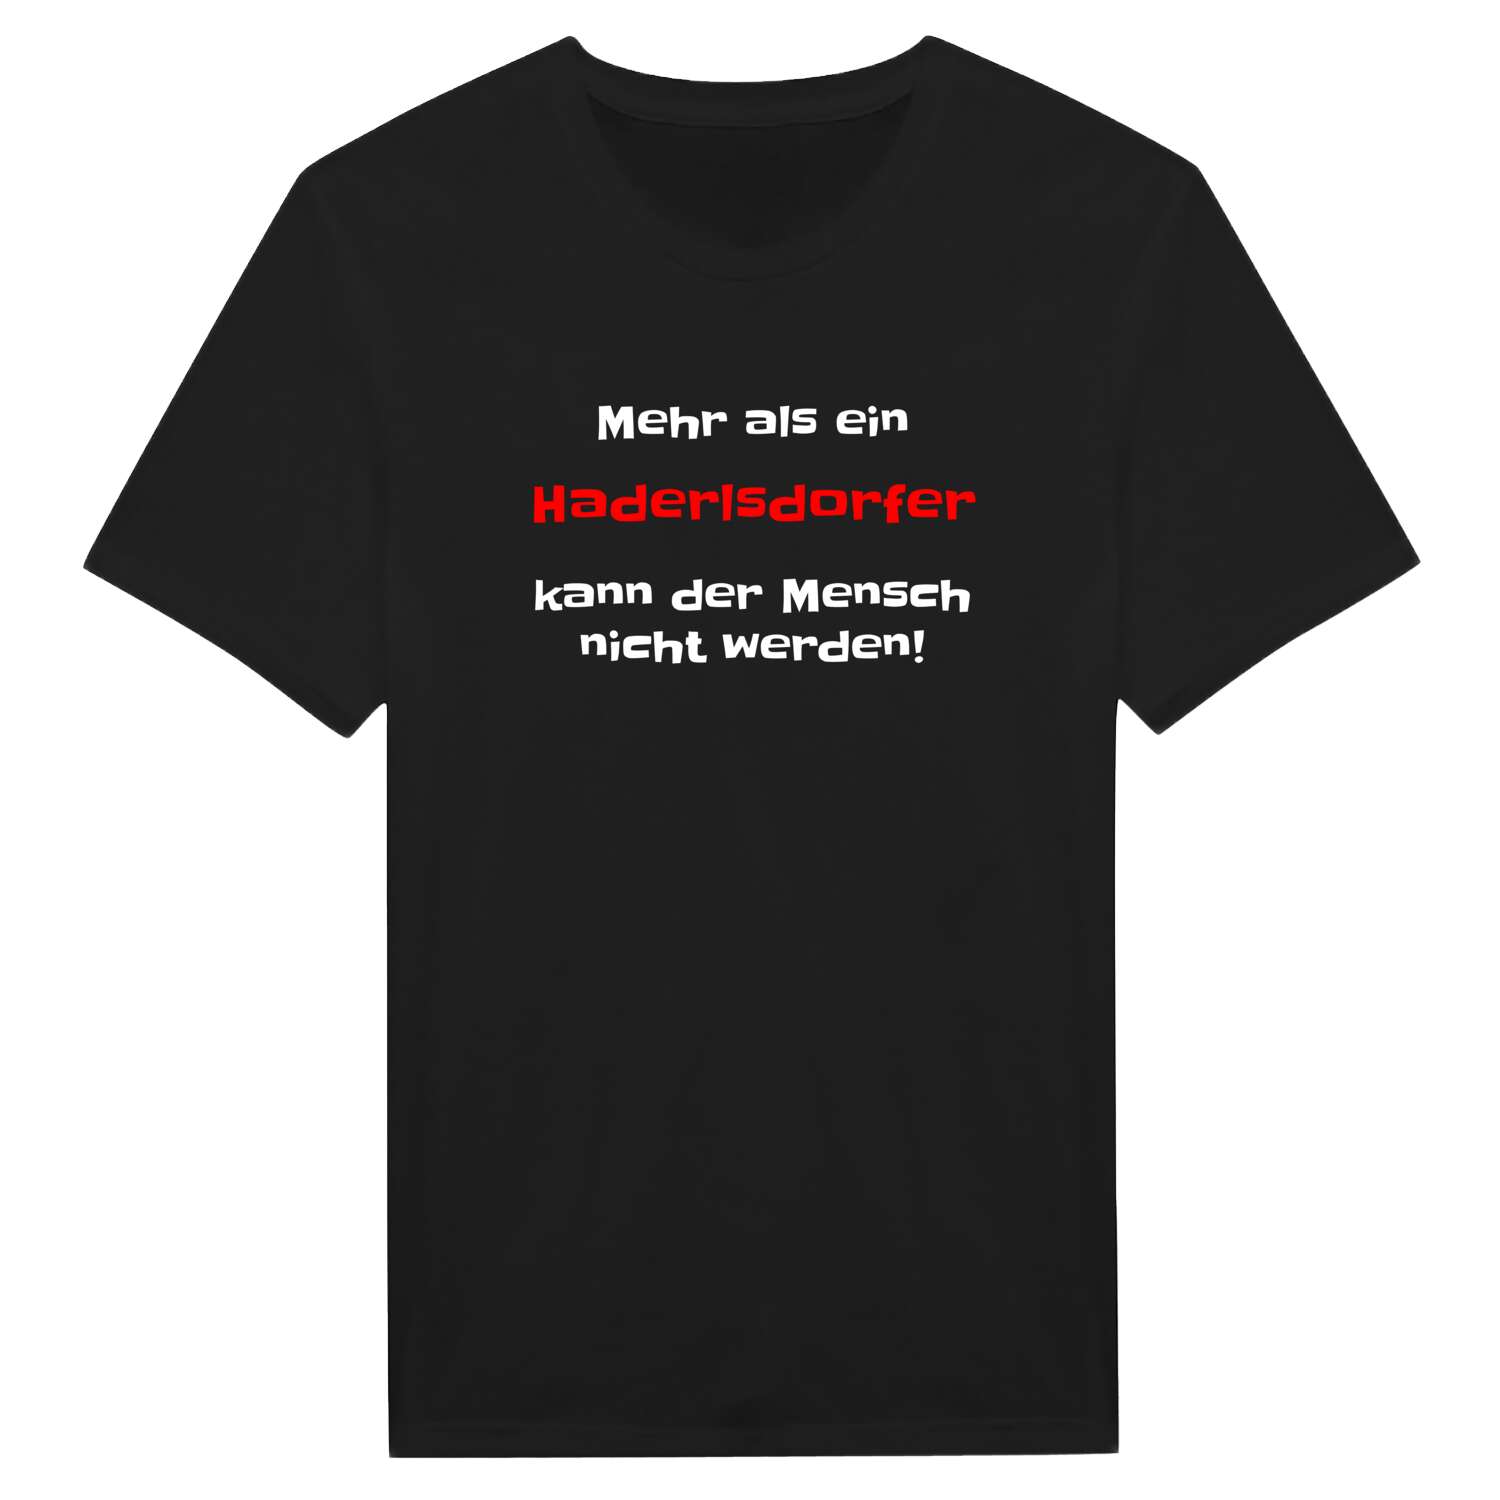 Haderlsdorf T-Shirt »Mehr als ein«